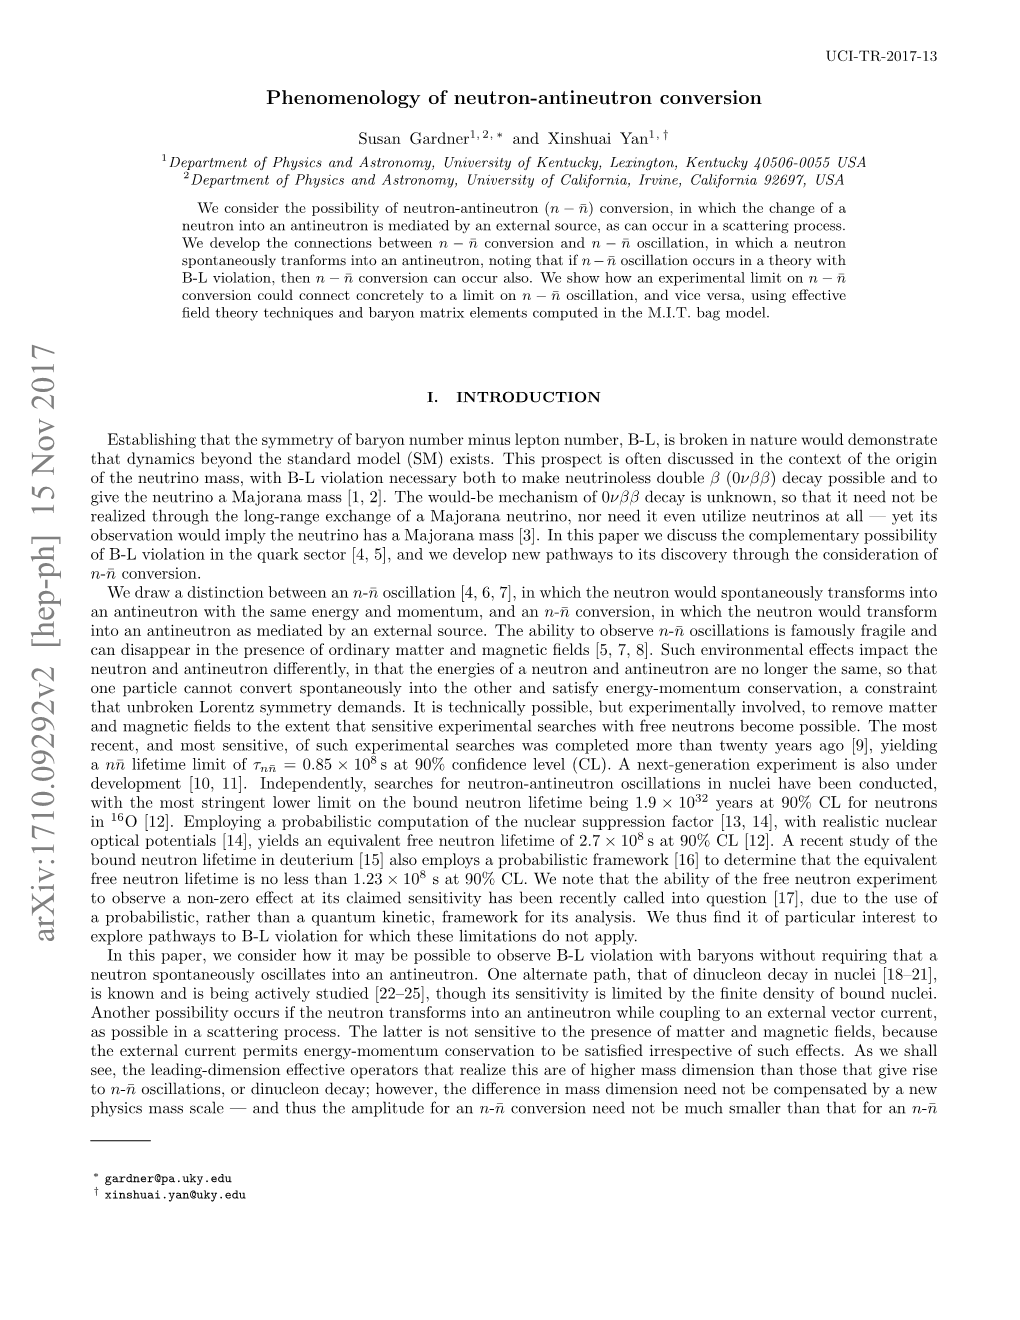 Phenomenology of Neutron-Antineutron Conversion